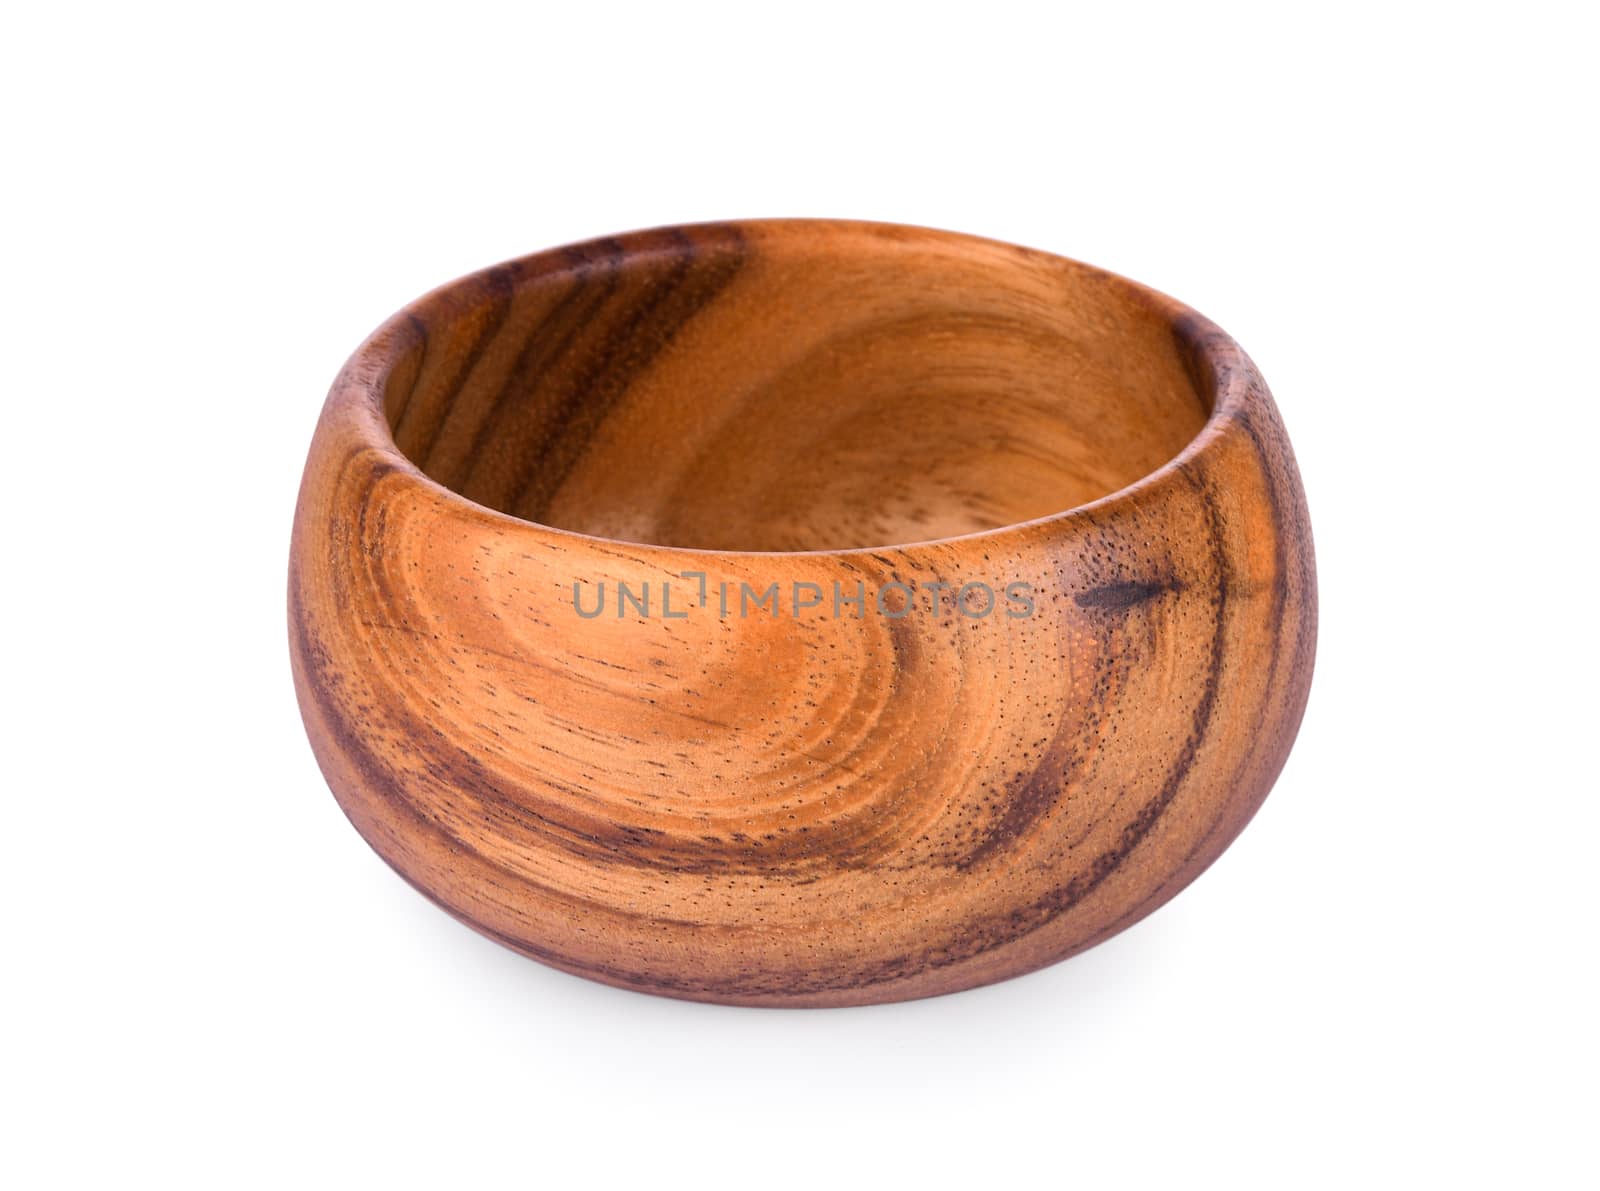 vintage wood bowl isolated on white background